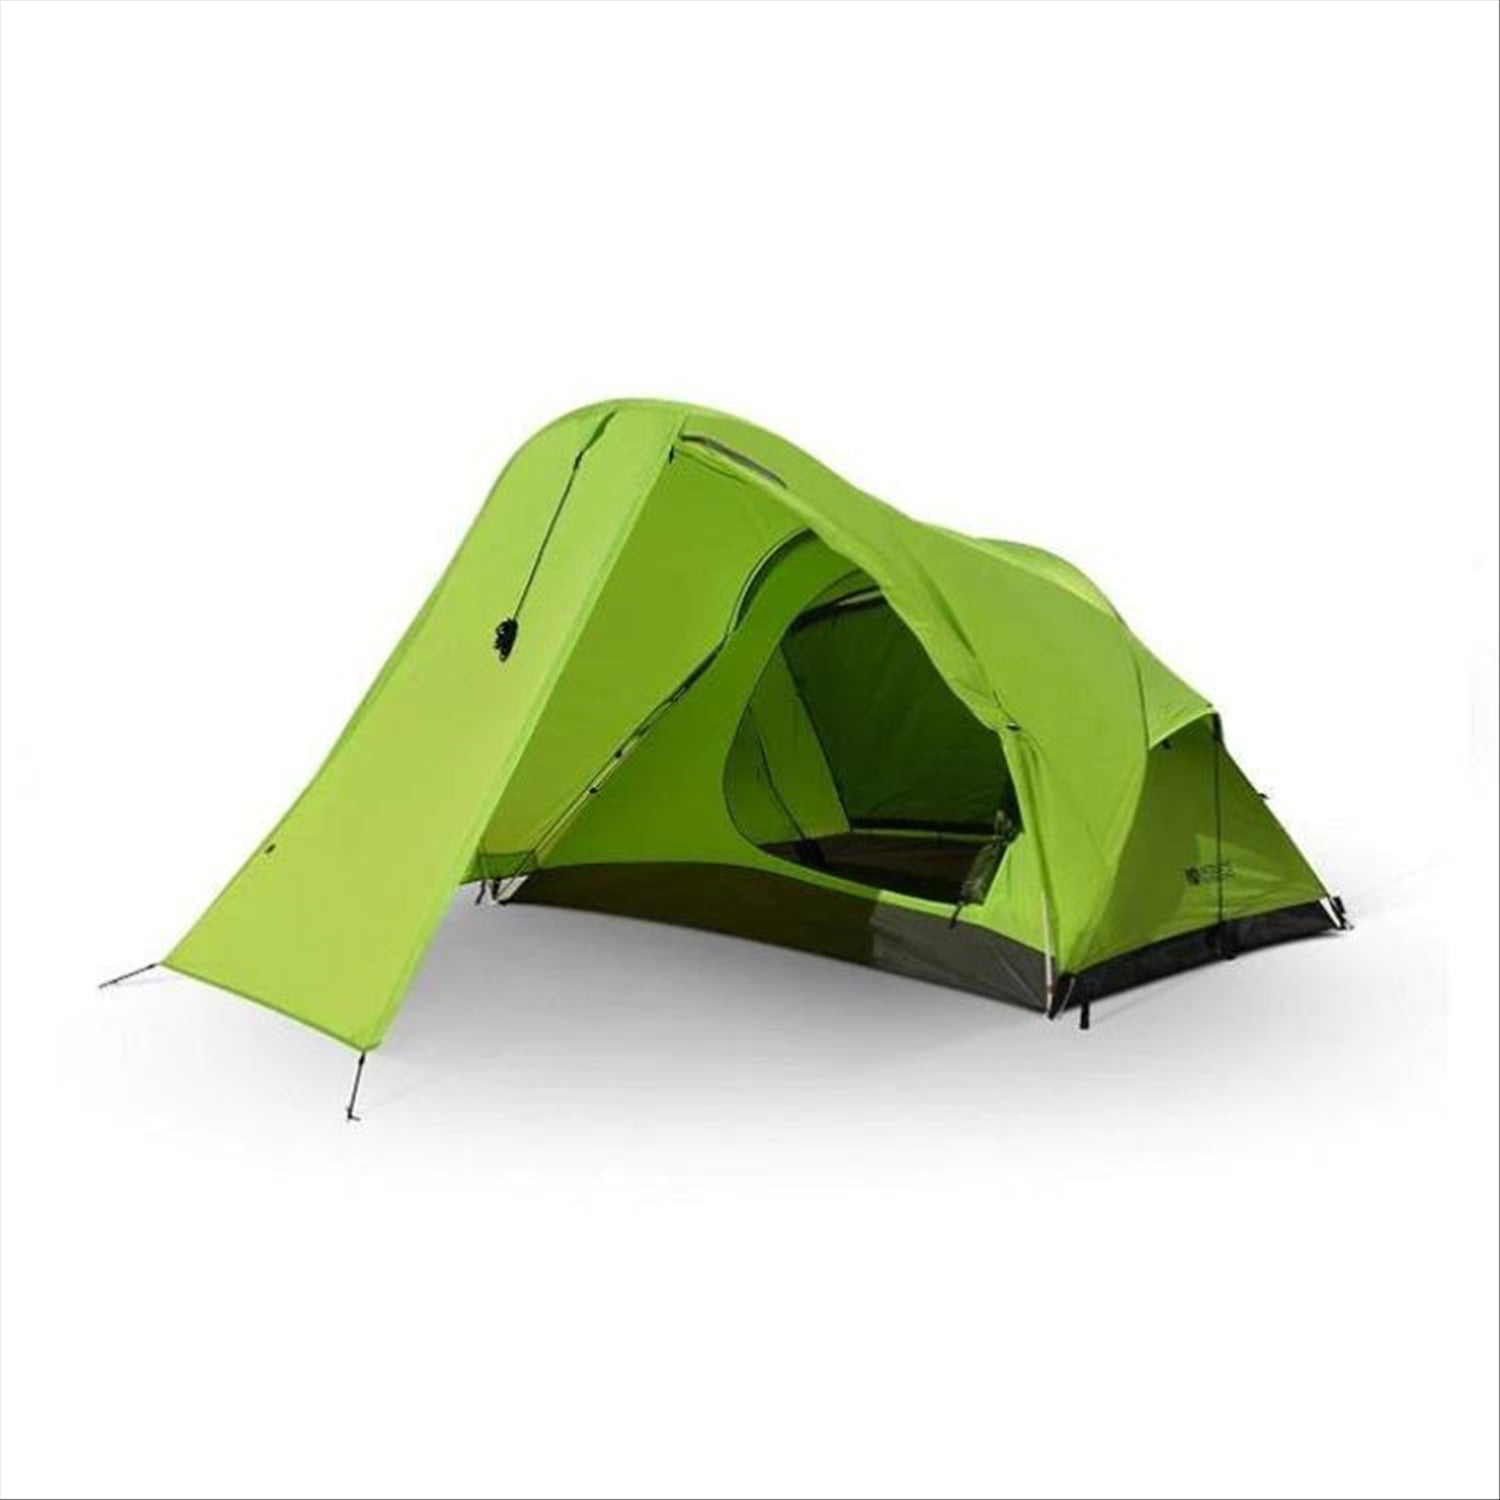 Intents Intents Outdoors Tourer XLV 2 - 2 Person Tent Extra Large Vestibule, 3.4kg